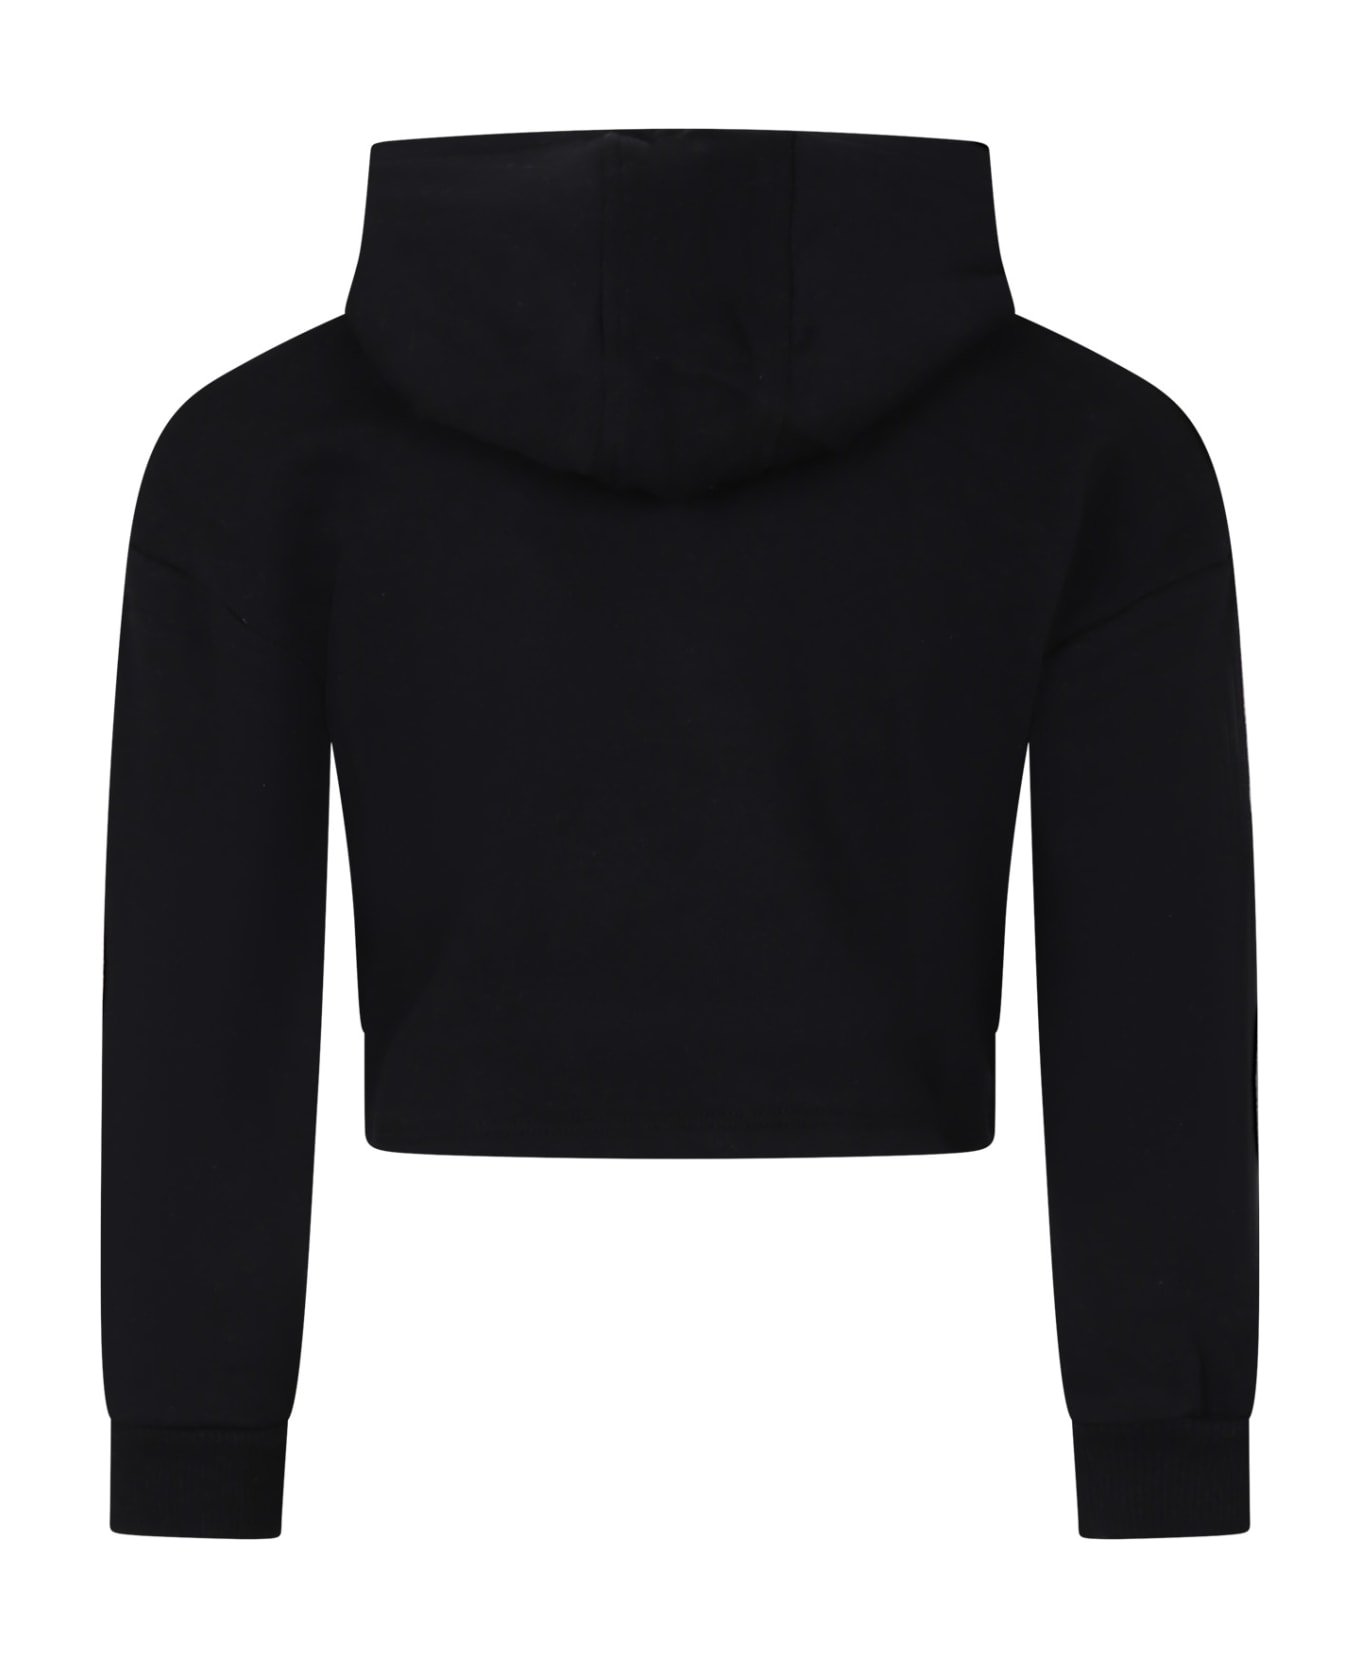 Rykiel Enfant Black Sweatshirt For Girl With Rhinestone Logo - Black